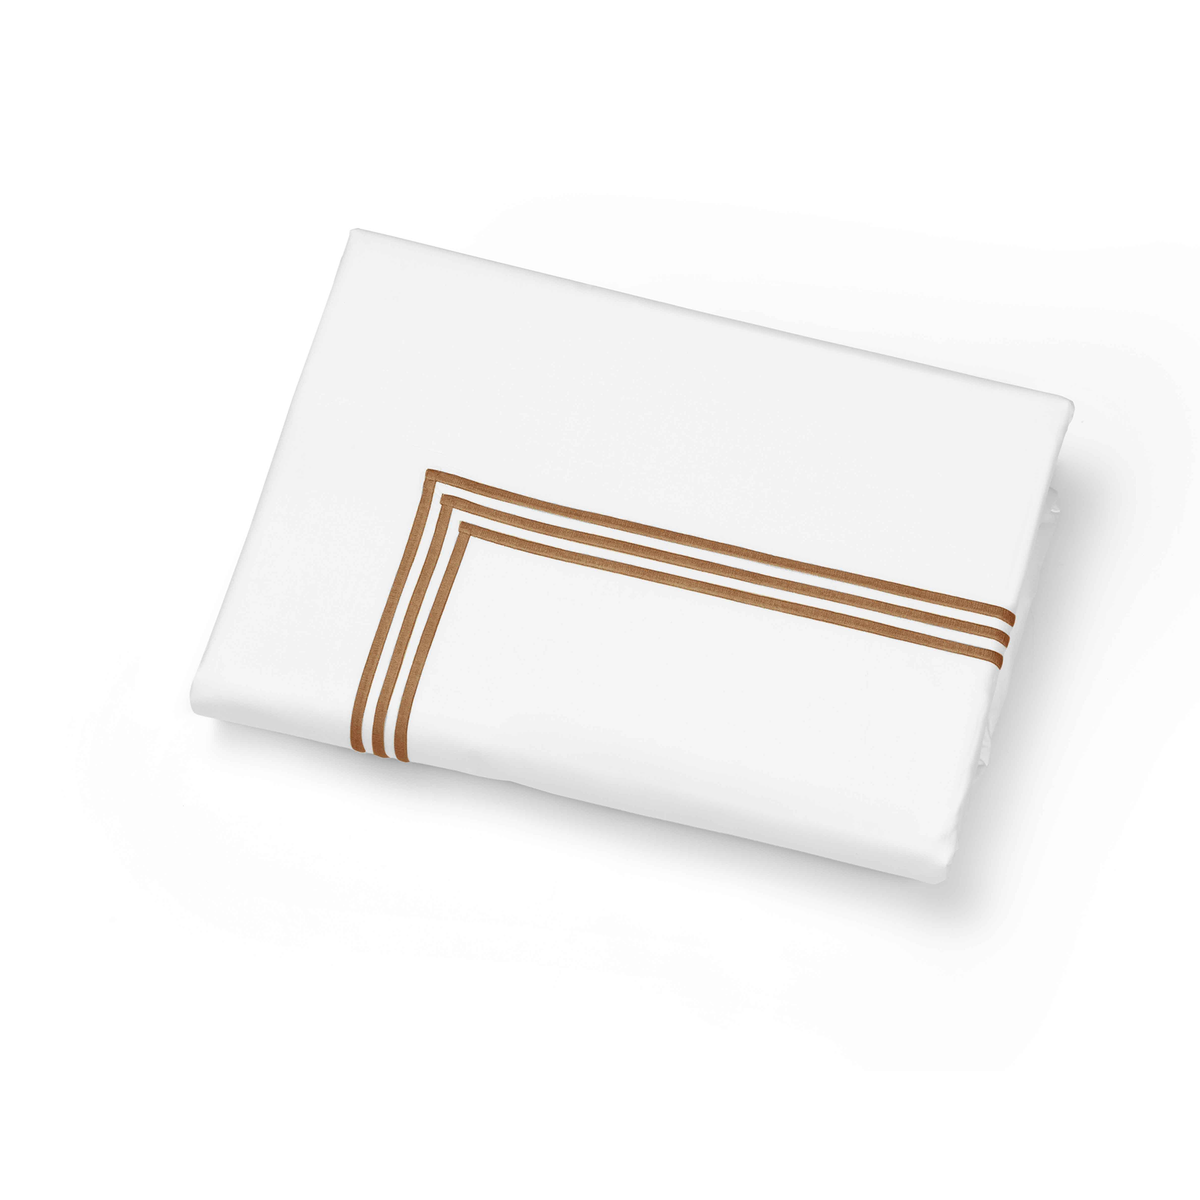 Folded Duvet Cover of Signoria Platinum Percale Bedding in White/Cognac Color